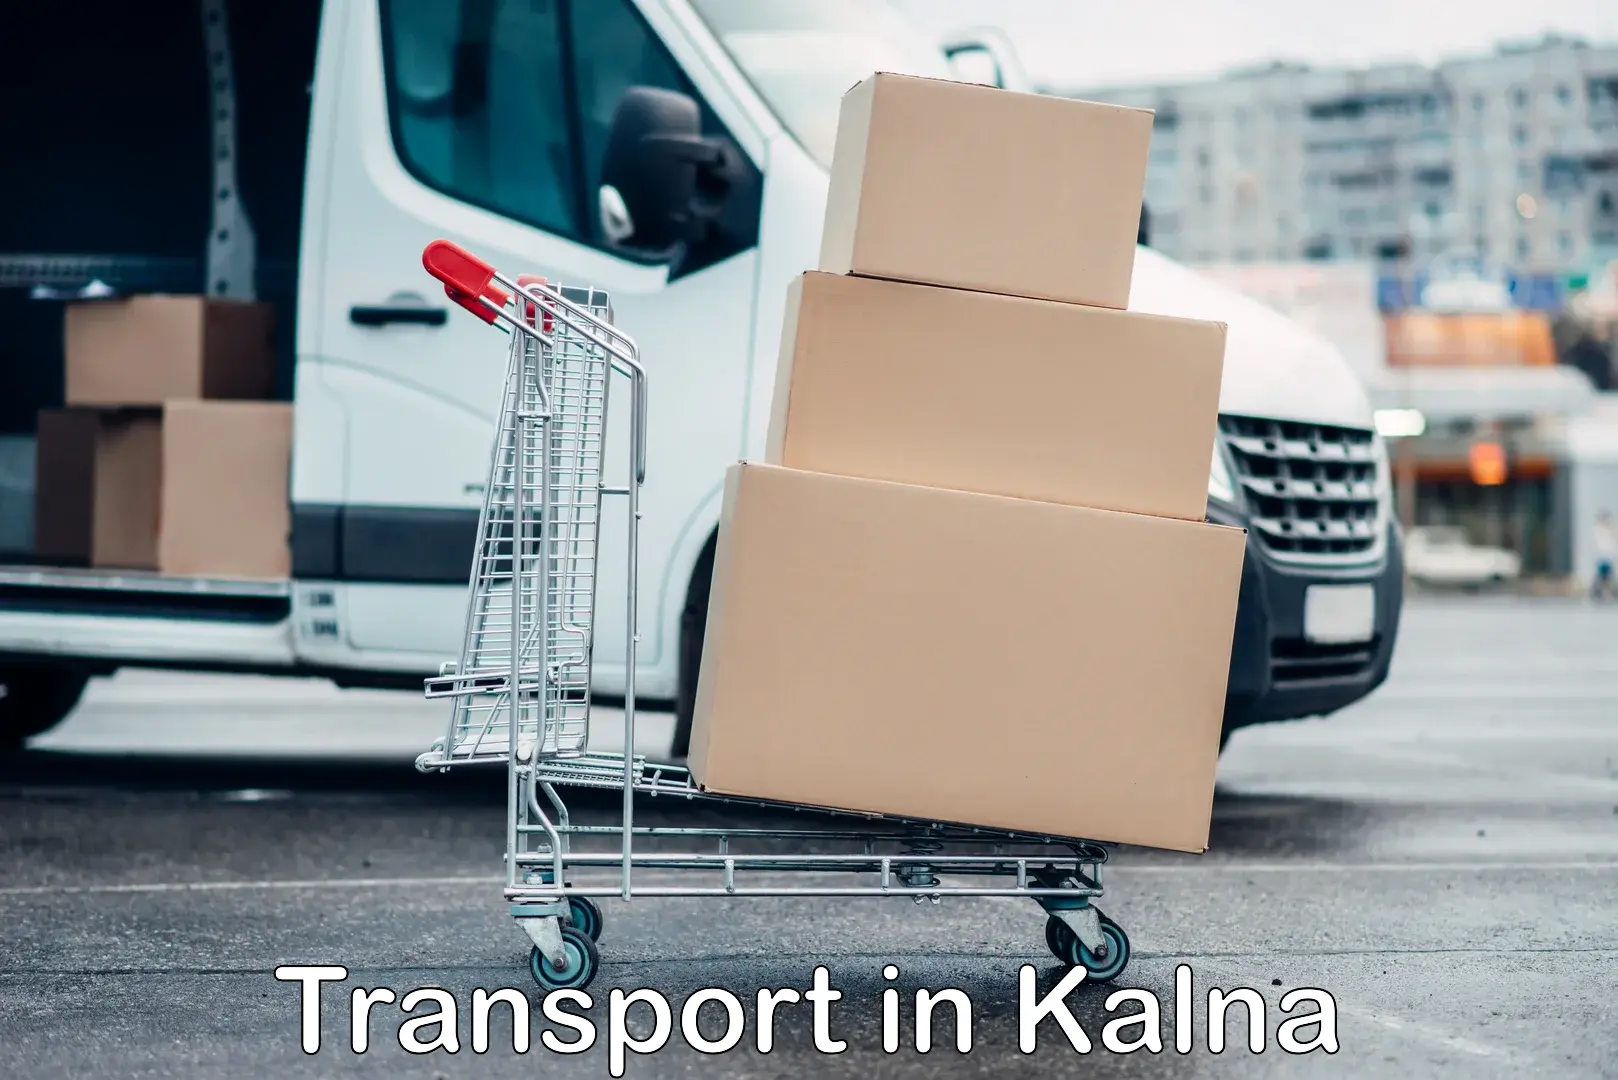 Transport in sharing in Kalna